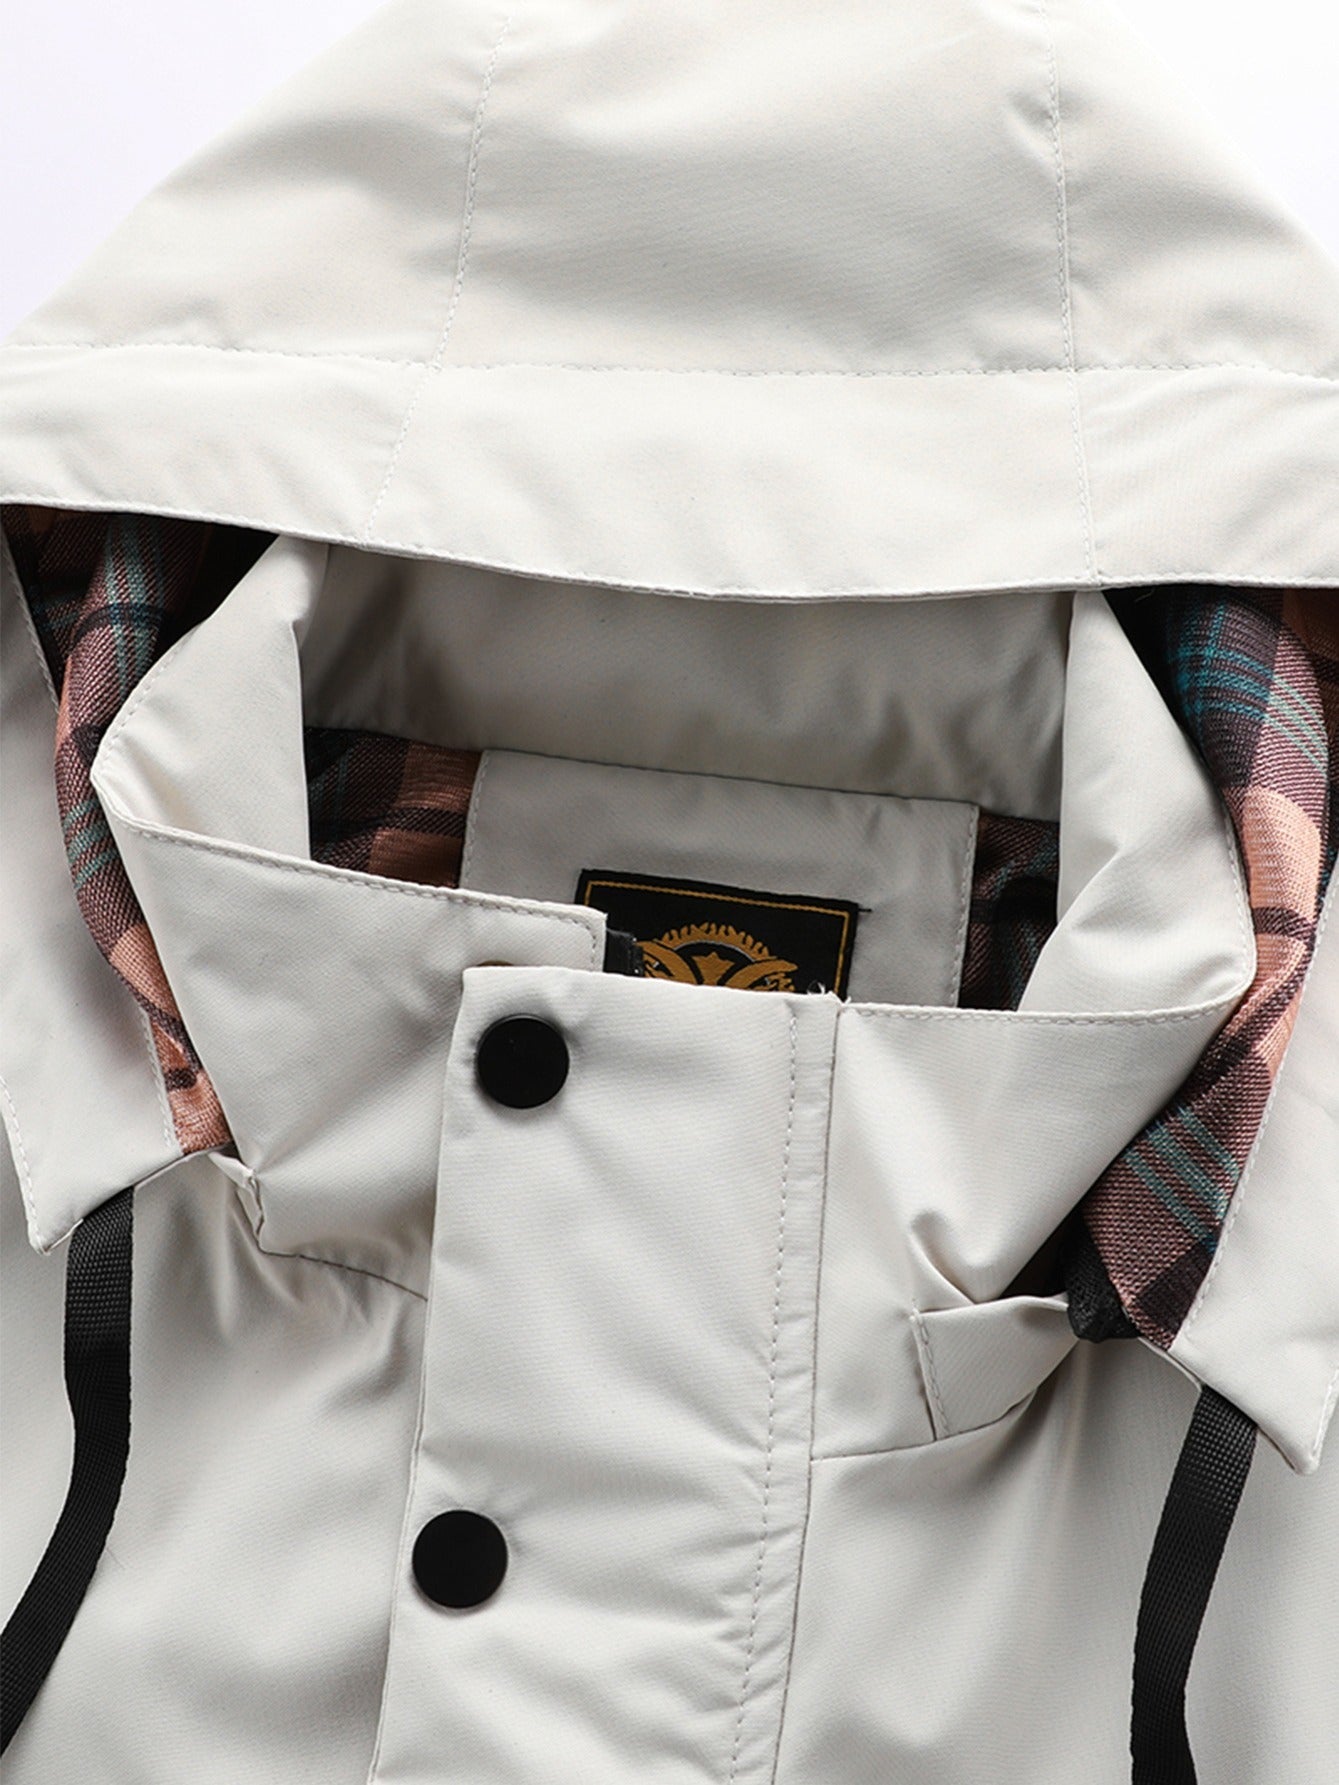 「lovevop」New Men's Fashion Casual Windbreaker Bomber Jacket, Spring Outdoor Waterproof Sports Jacket